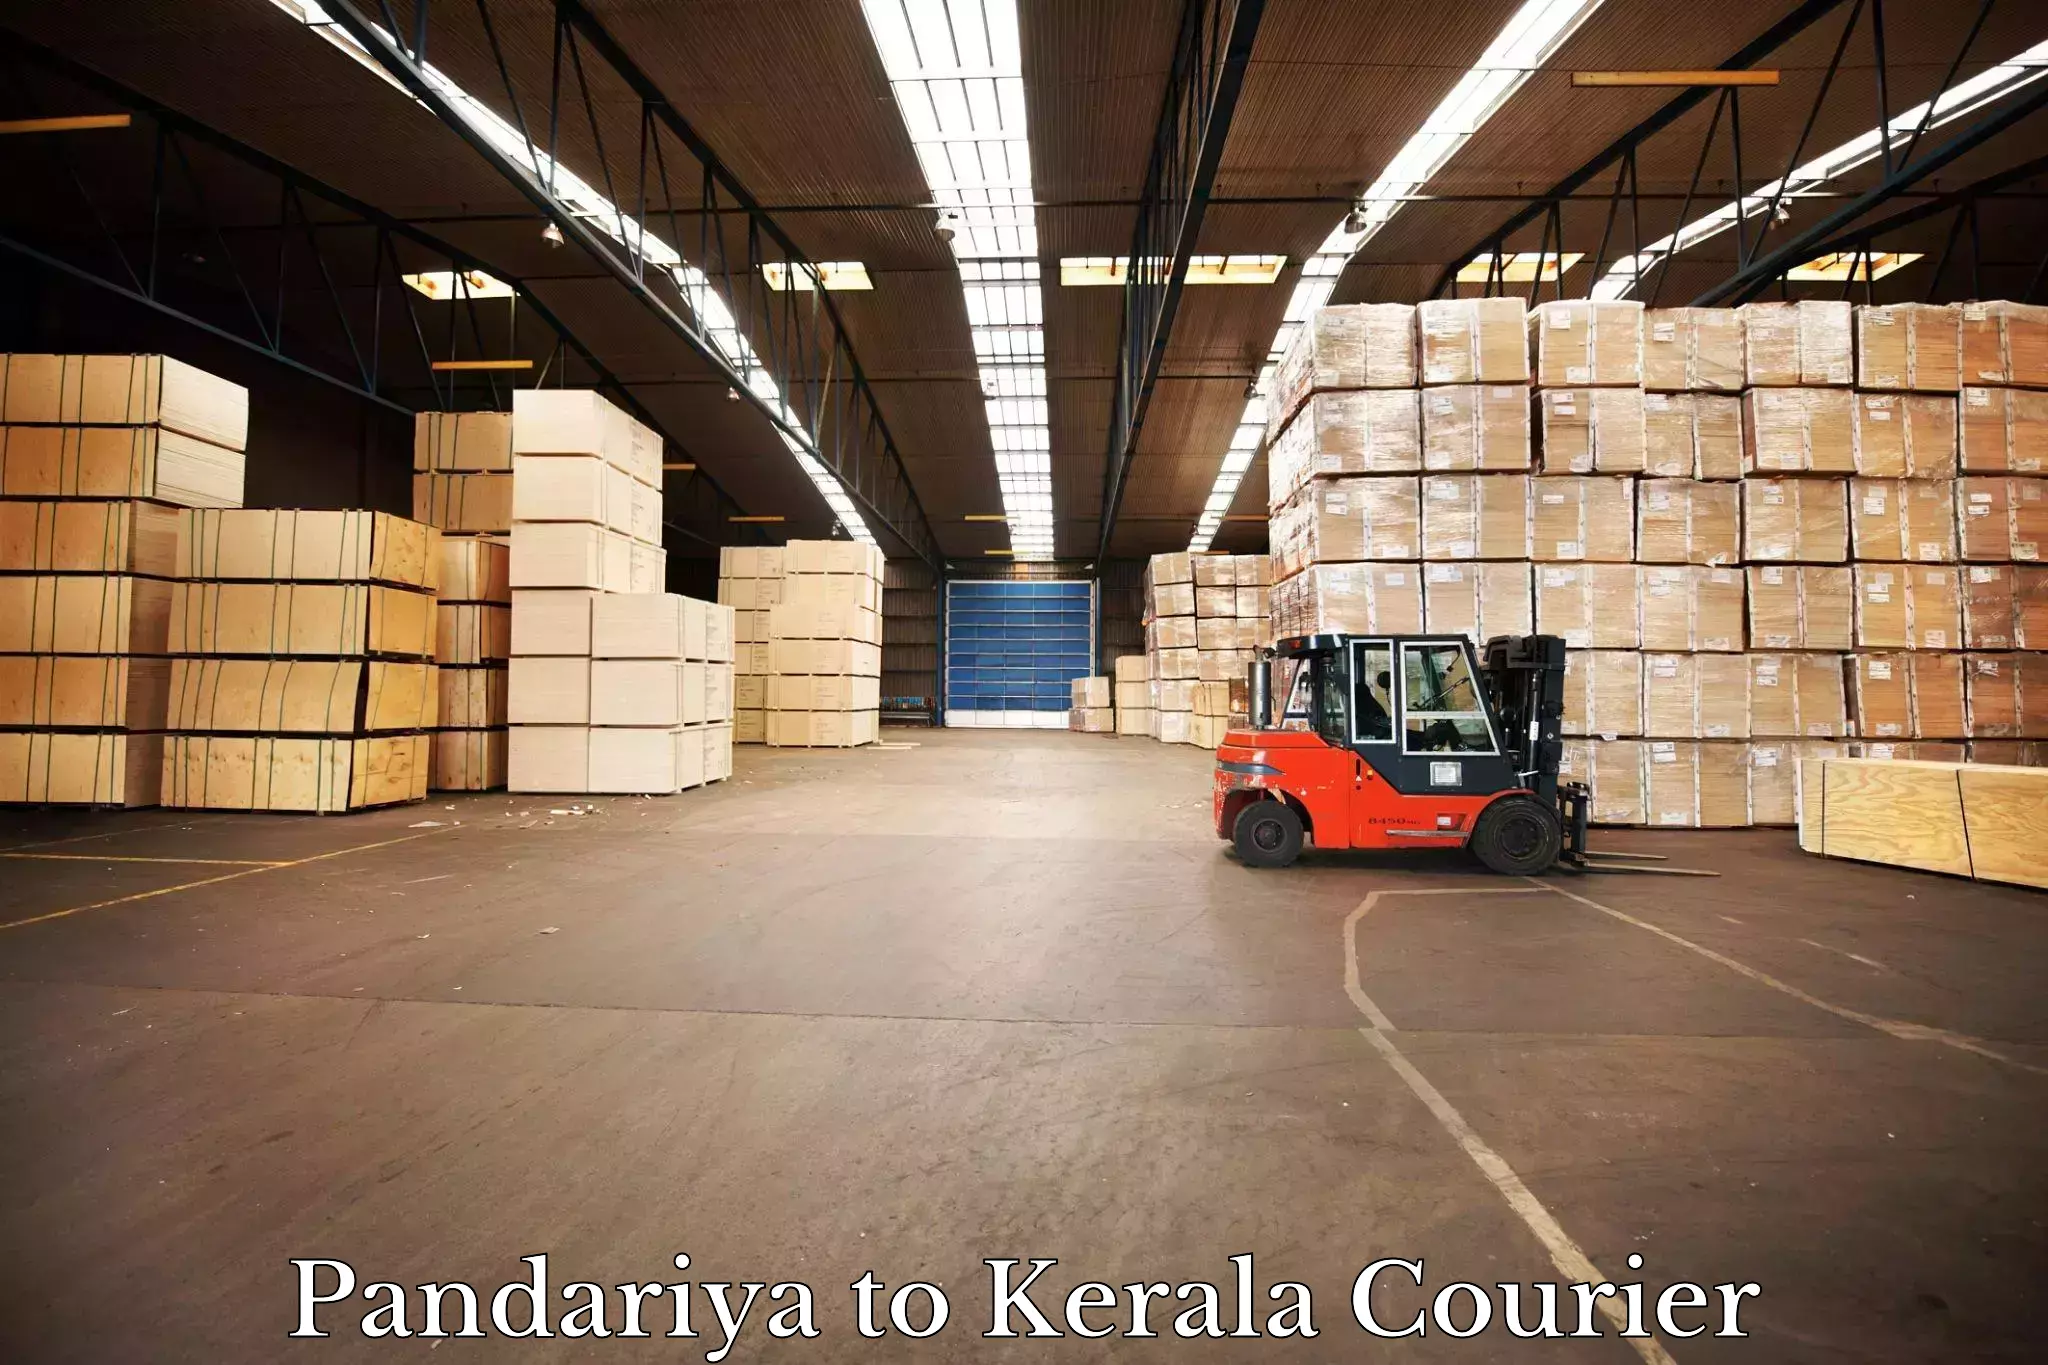 Door-to-door freight service Pandariya to Kerala